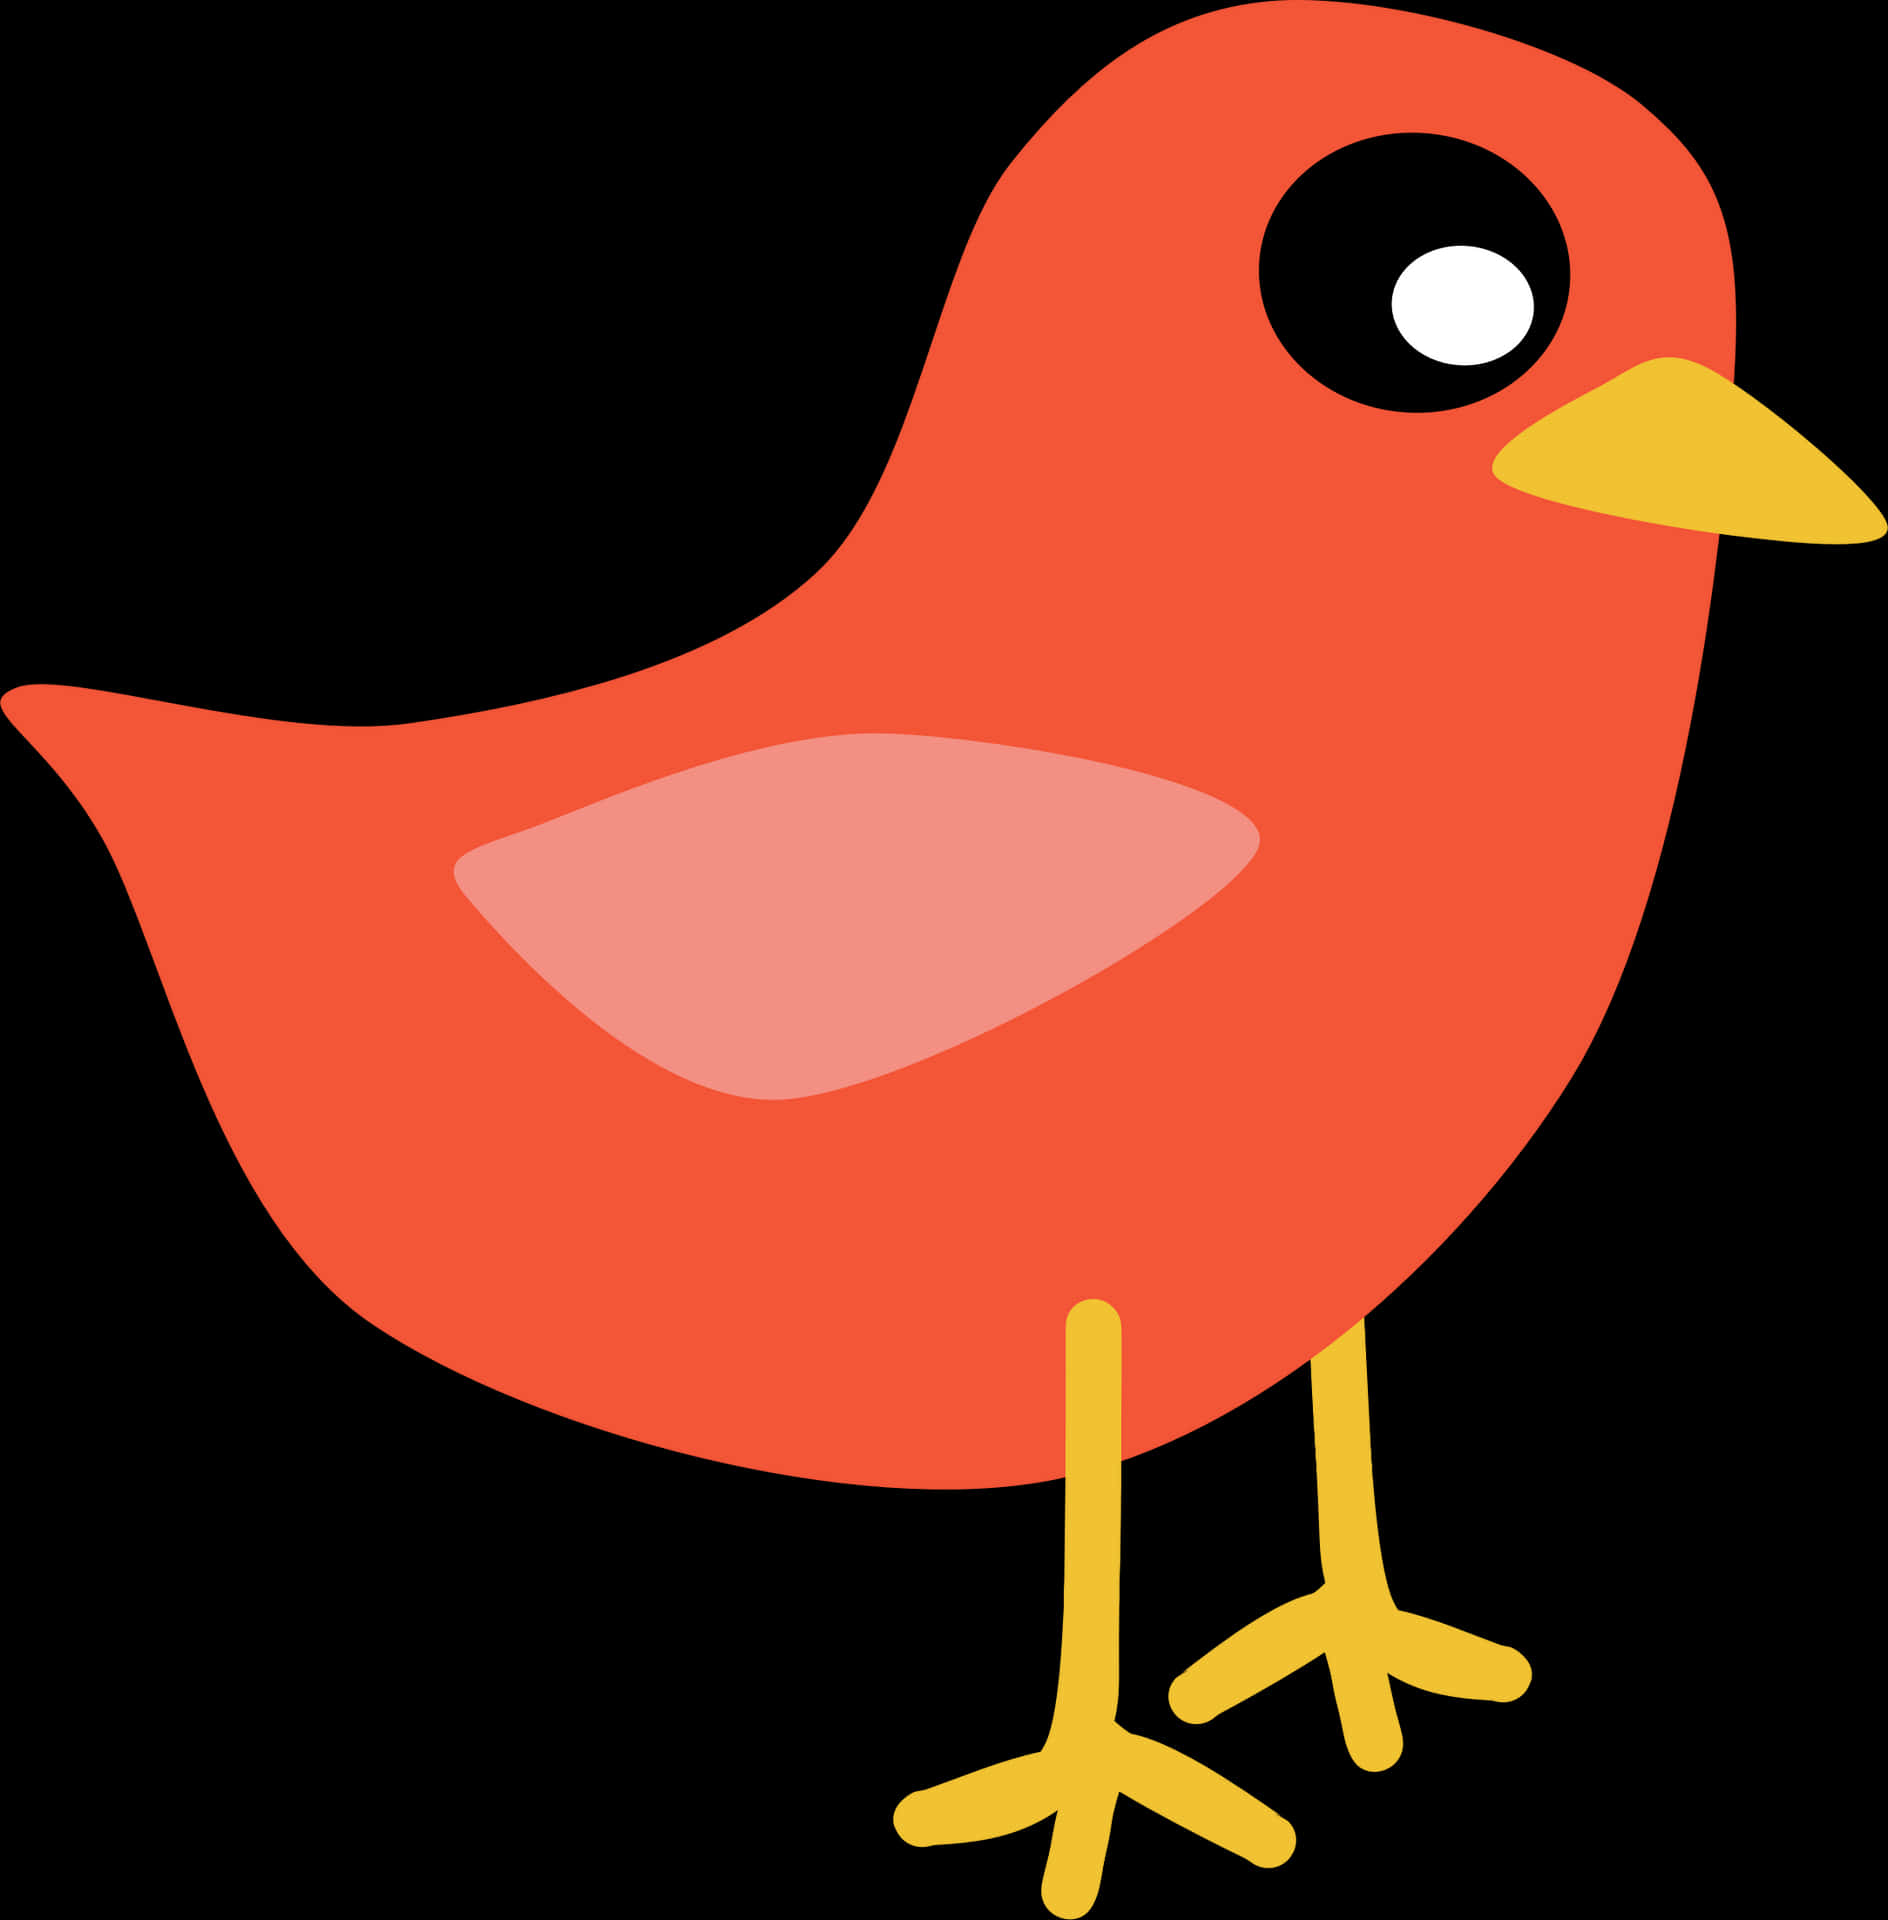 Red Cartoon Bird Illustration PNG